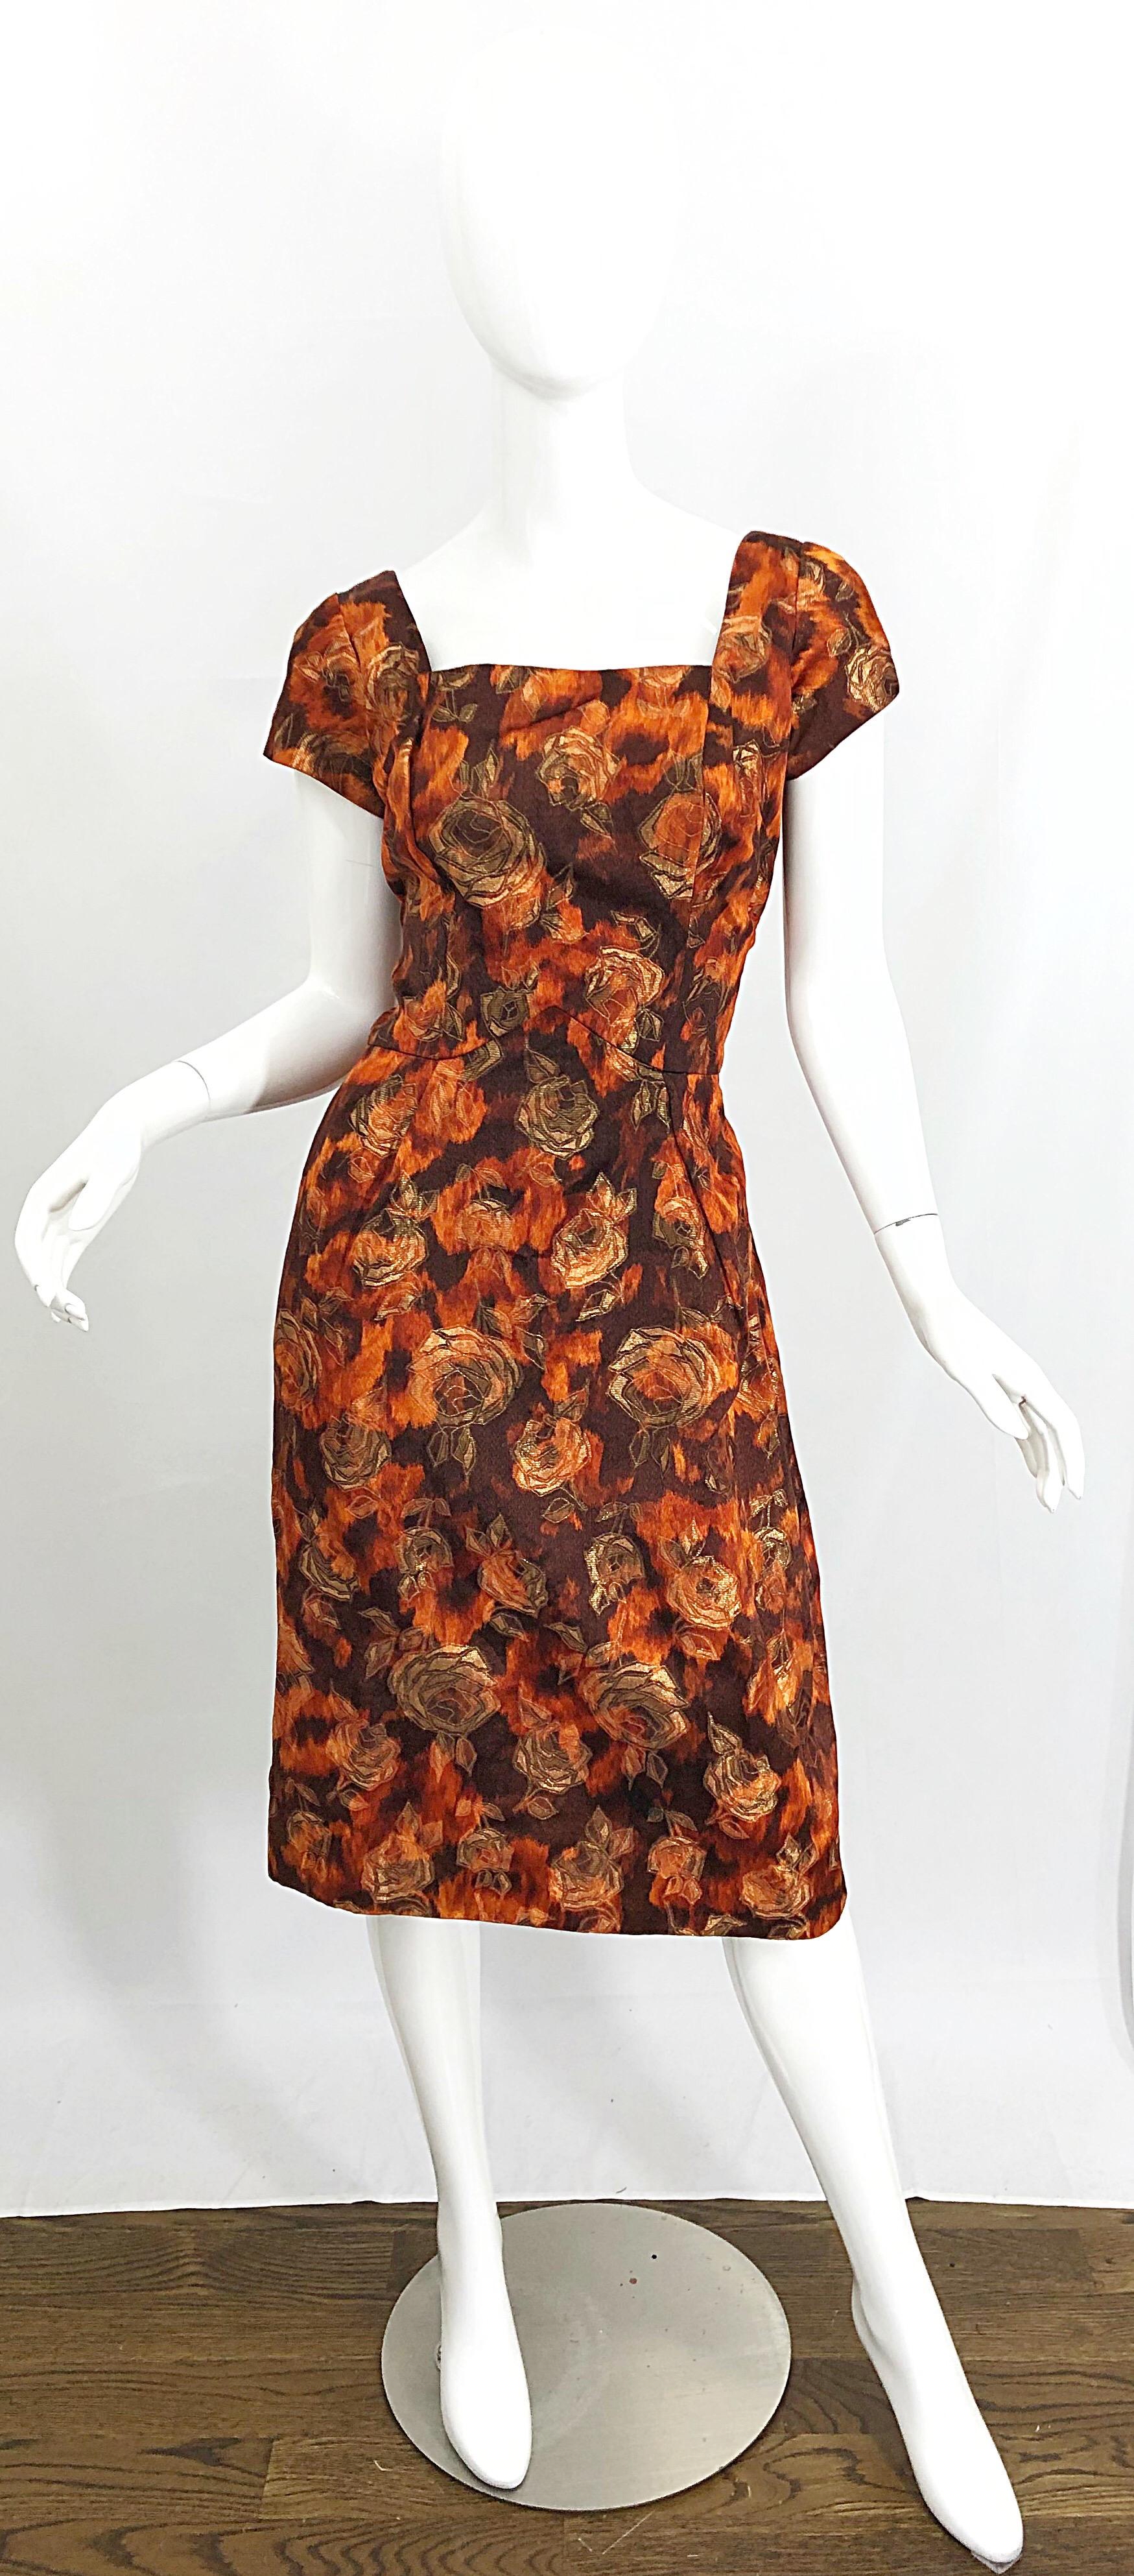 Ensemble robe et veste en brocart de soie demi-couture imprimé rose des années 1950 ! Un magnifique tissu aux couleurs automnales de brun, d'orange brûlé et d'or. La veste Pillbox a des manches 3/4, avec des boutons et des fermetures à pression. La